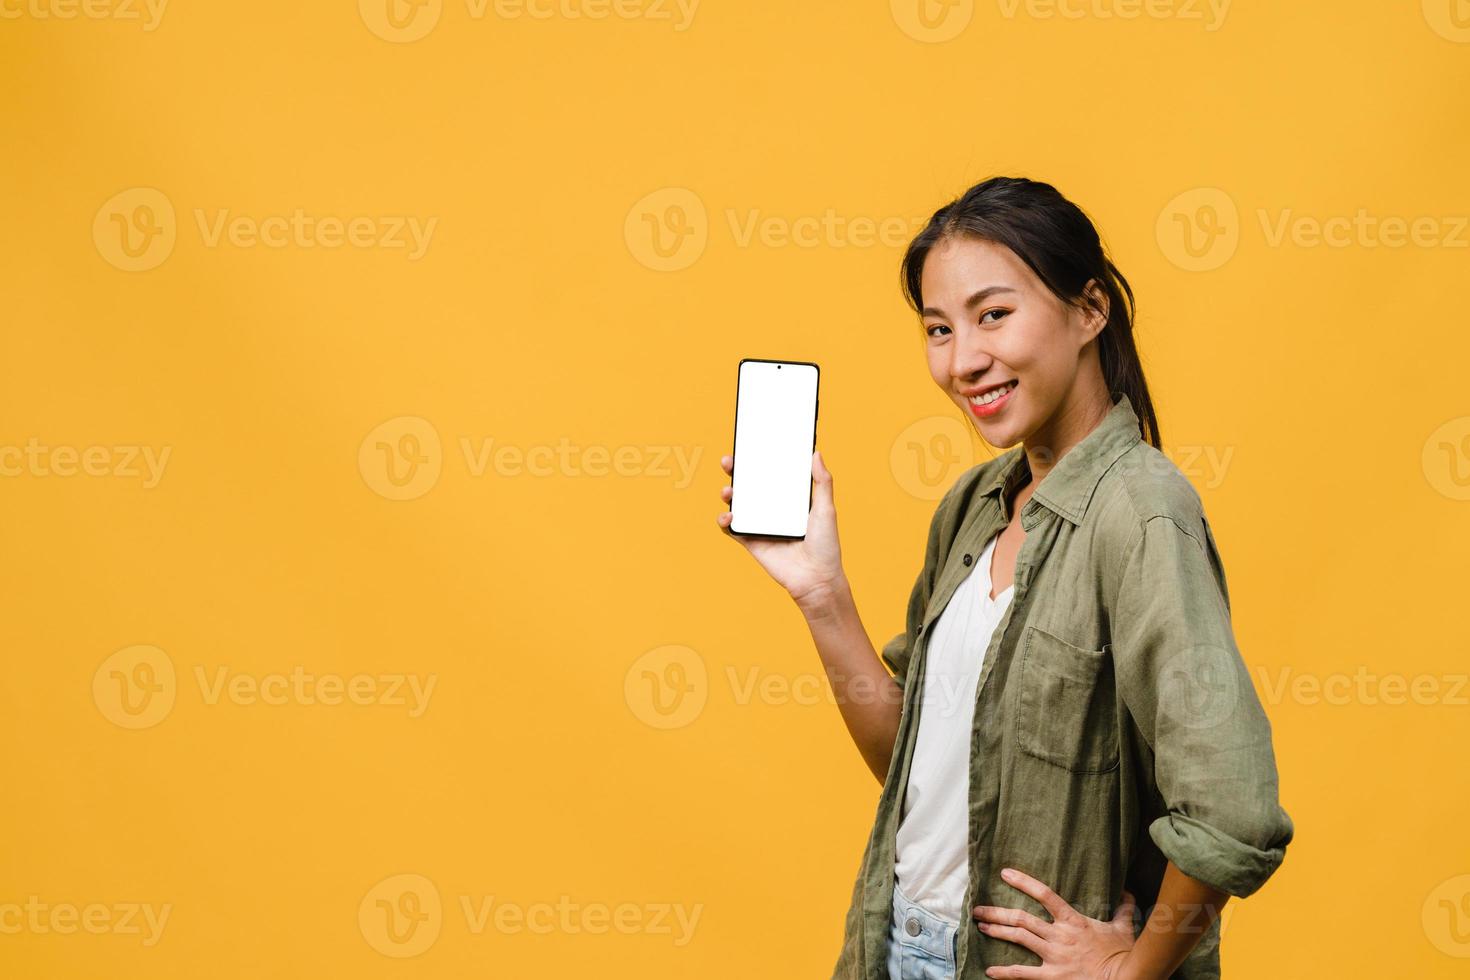 jovem senhora asiática mostra tela vazia do smartphone com expressão positiva, sorri amplamente, vestida com roupas casuais, sentindo felicidade sobre fundo amarelo. telefone celular com tela branca na mão feminina. foto